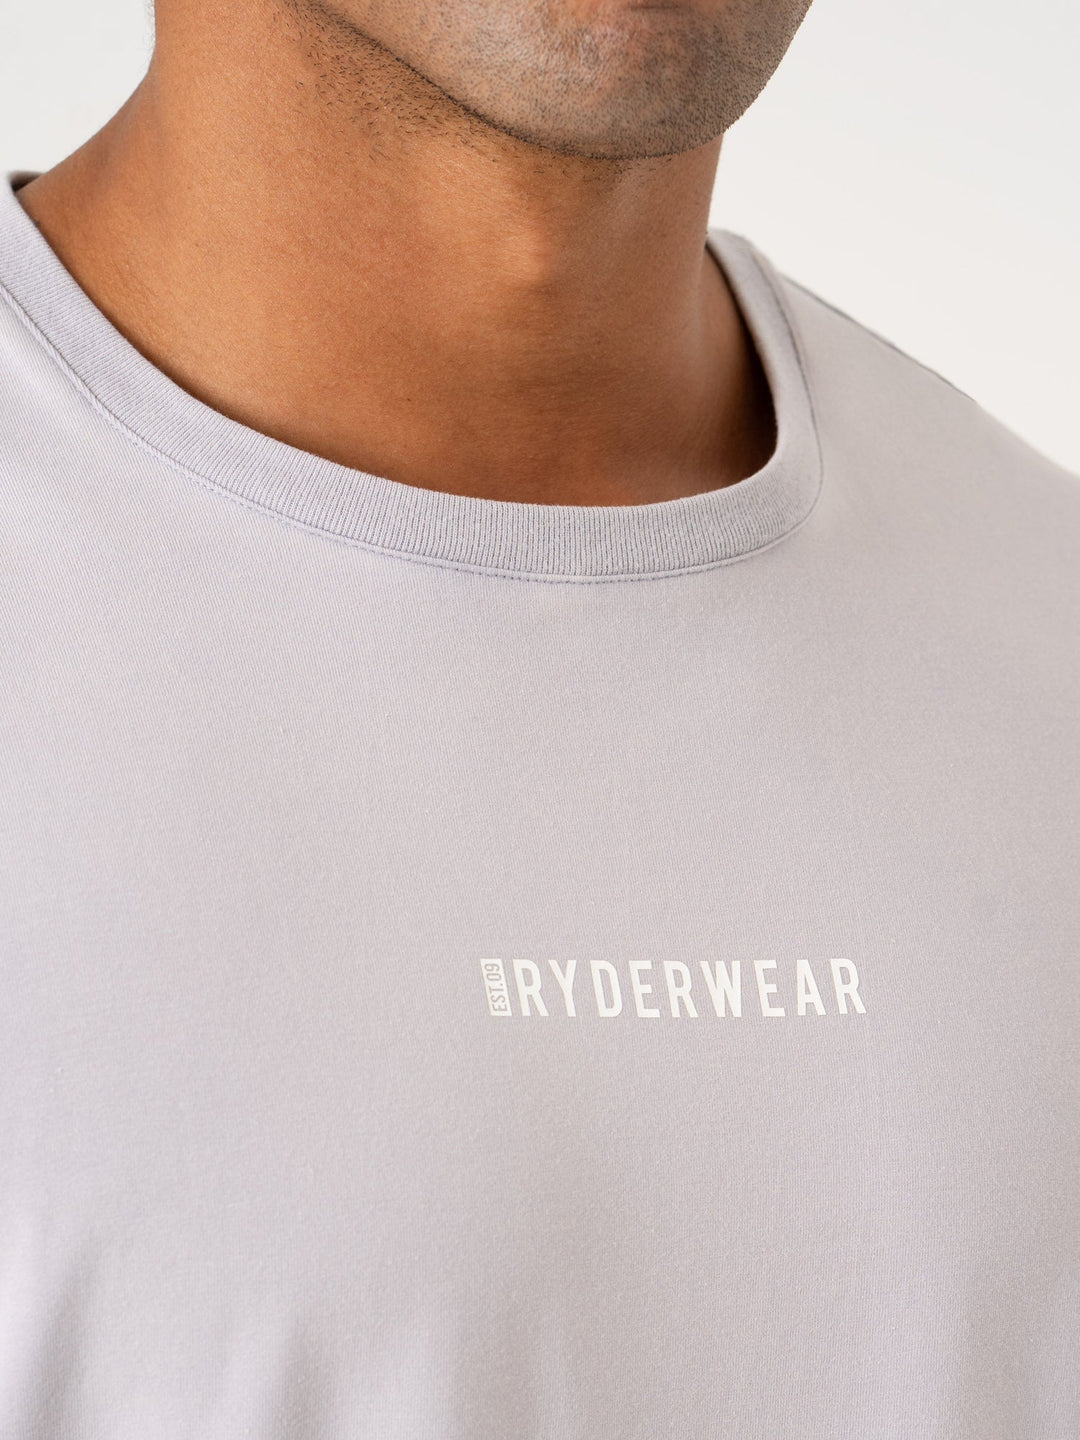 Pursuit Oversized T-Shirt - Lavender Stonewash Clothing Ryderwear 